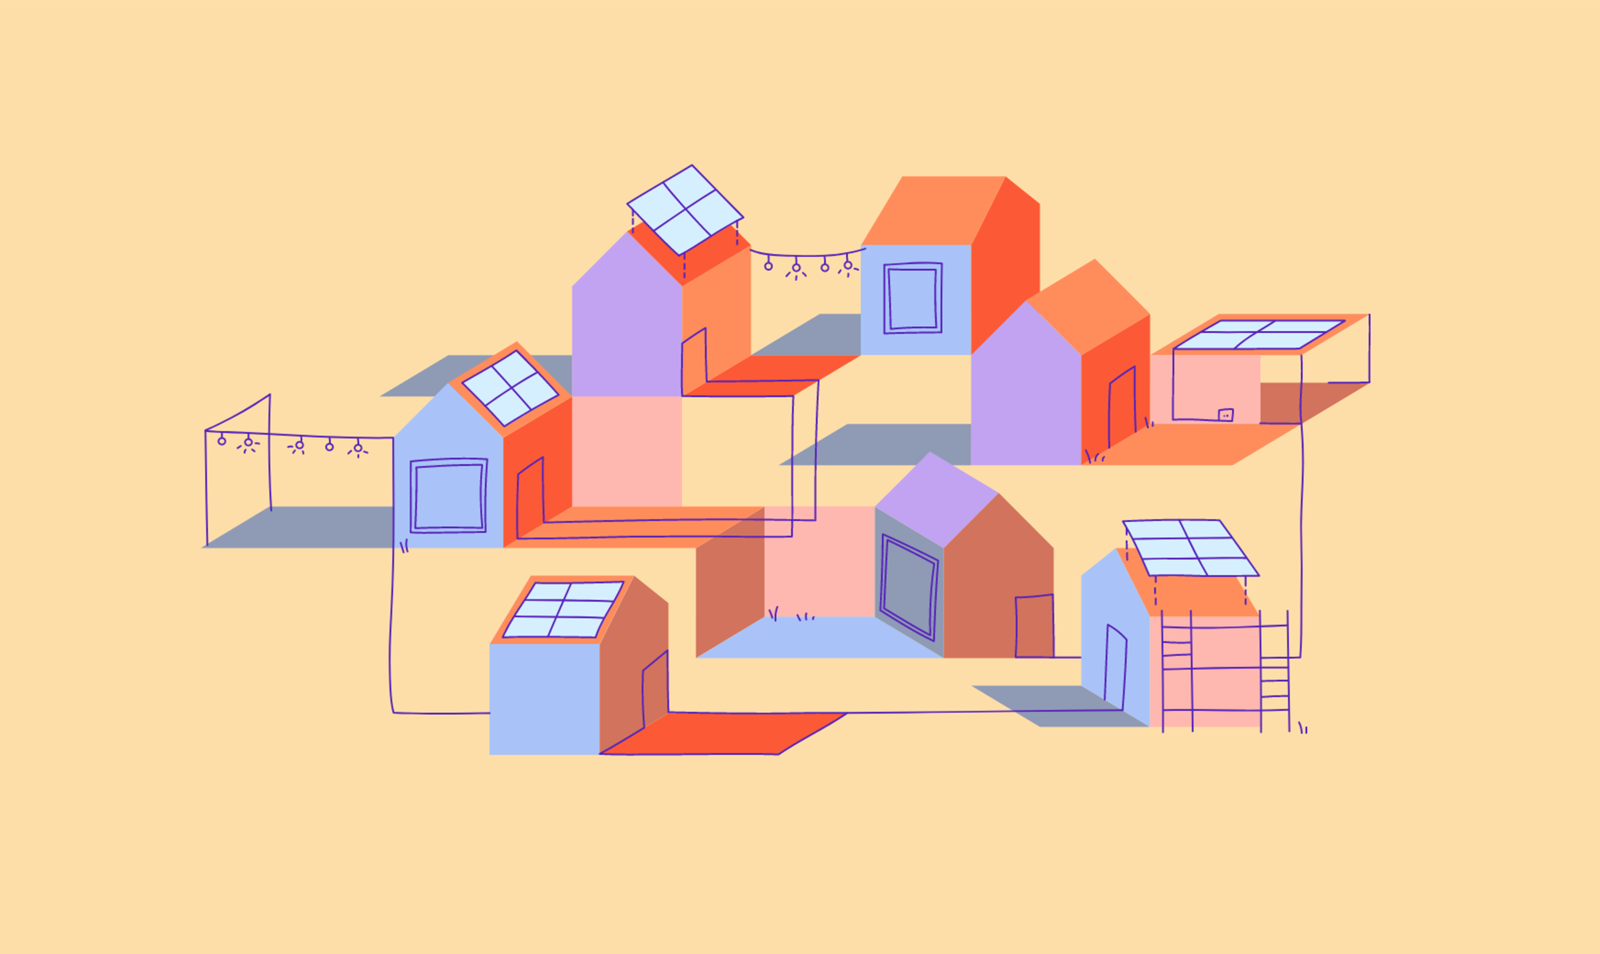 Illustration von miteinander vernetzten Häusern. Einige davon sind mit Solaranlagen auf dem Dach ausgestattet.